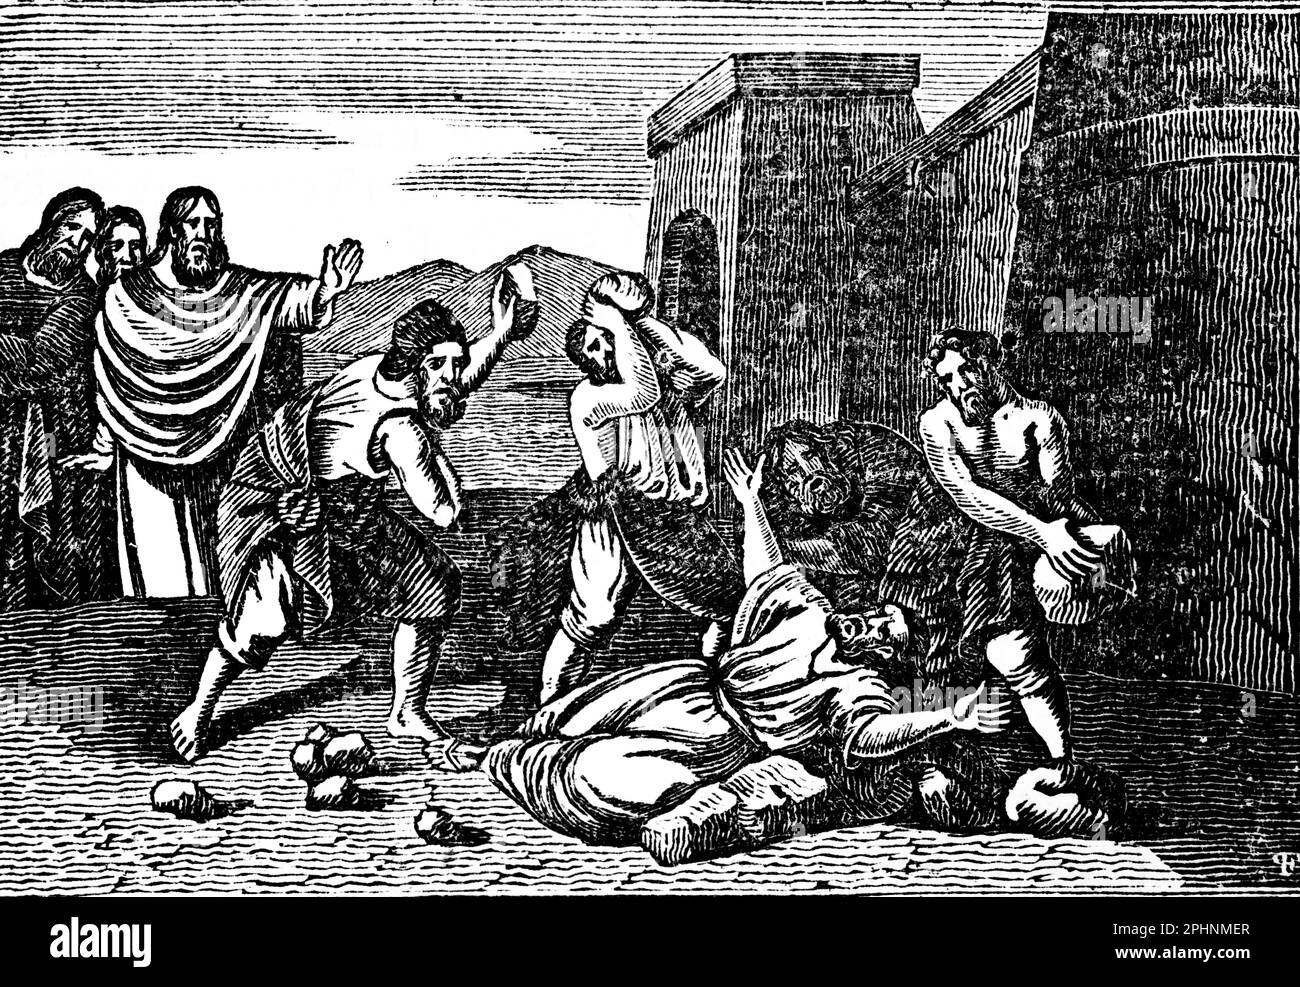 Saint Stephen, le premier martyr, est lapidé à mort, actes 7:51–53, les Apôtres, Nouveau Testament, bible 1831, illustration historique Banque D'Images